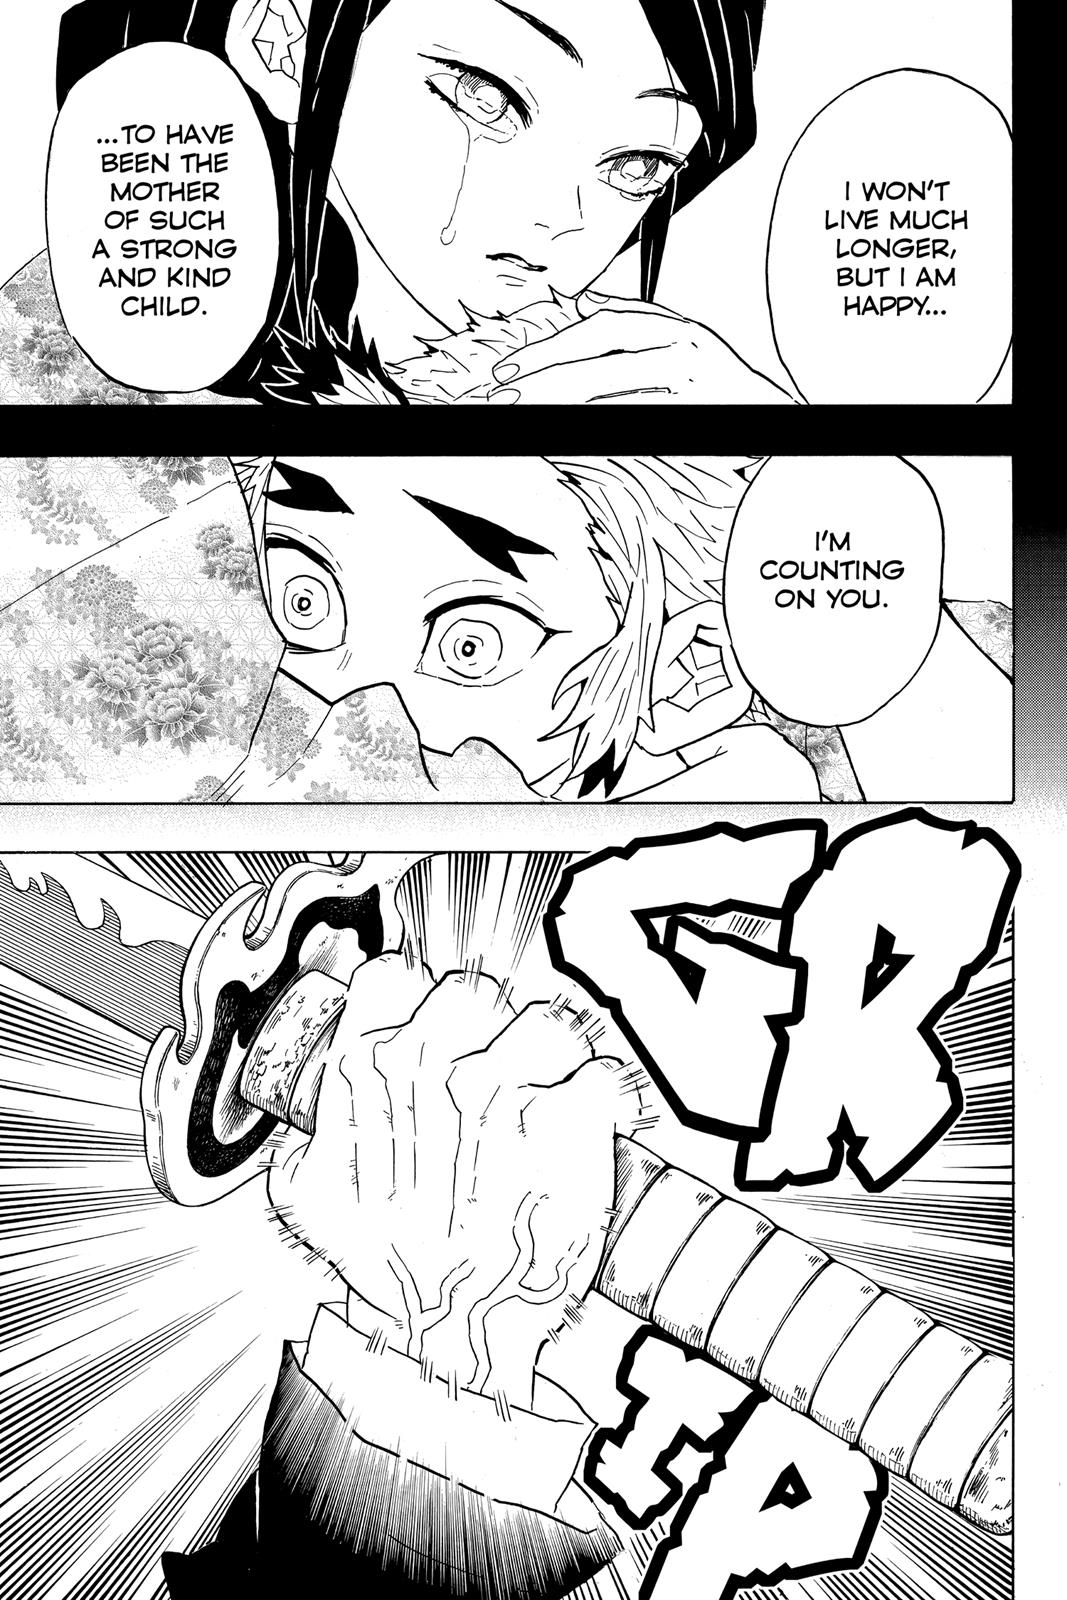 Demon Slayer Manga Manga Chapter - 64 - image 11